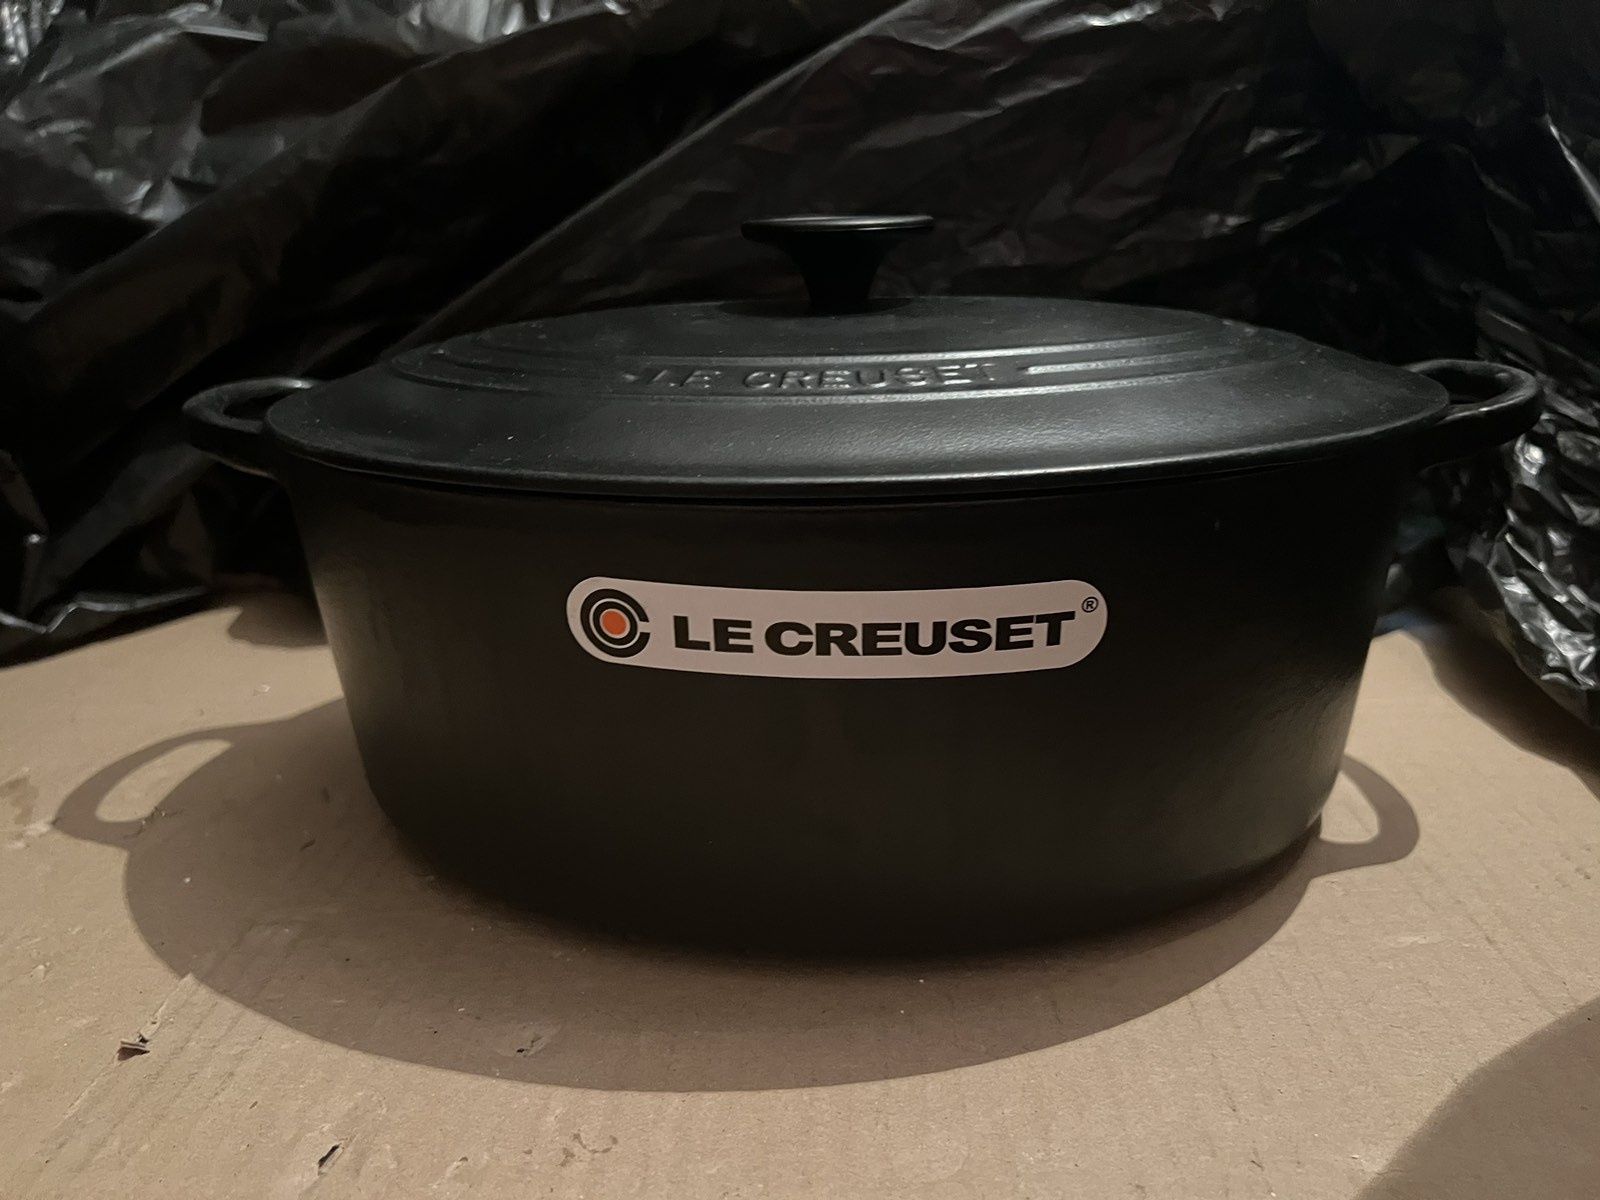 Le Creuset - oval casserole oven / 31 cm цвят: Черен Мат